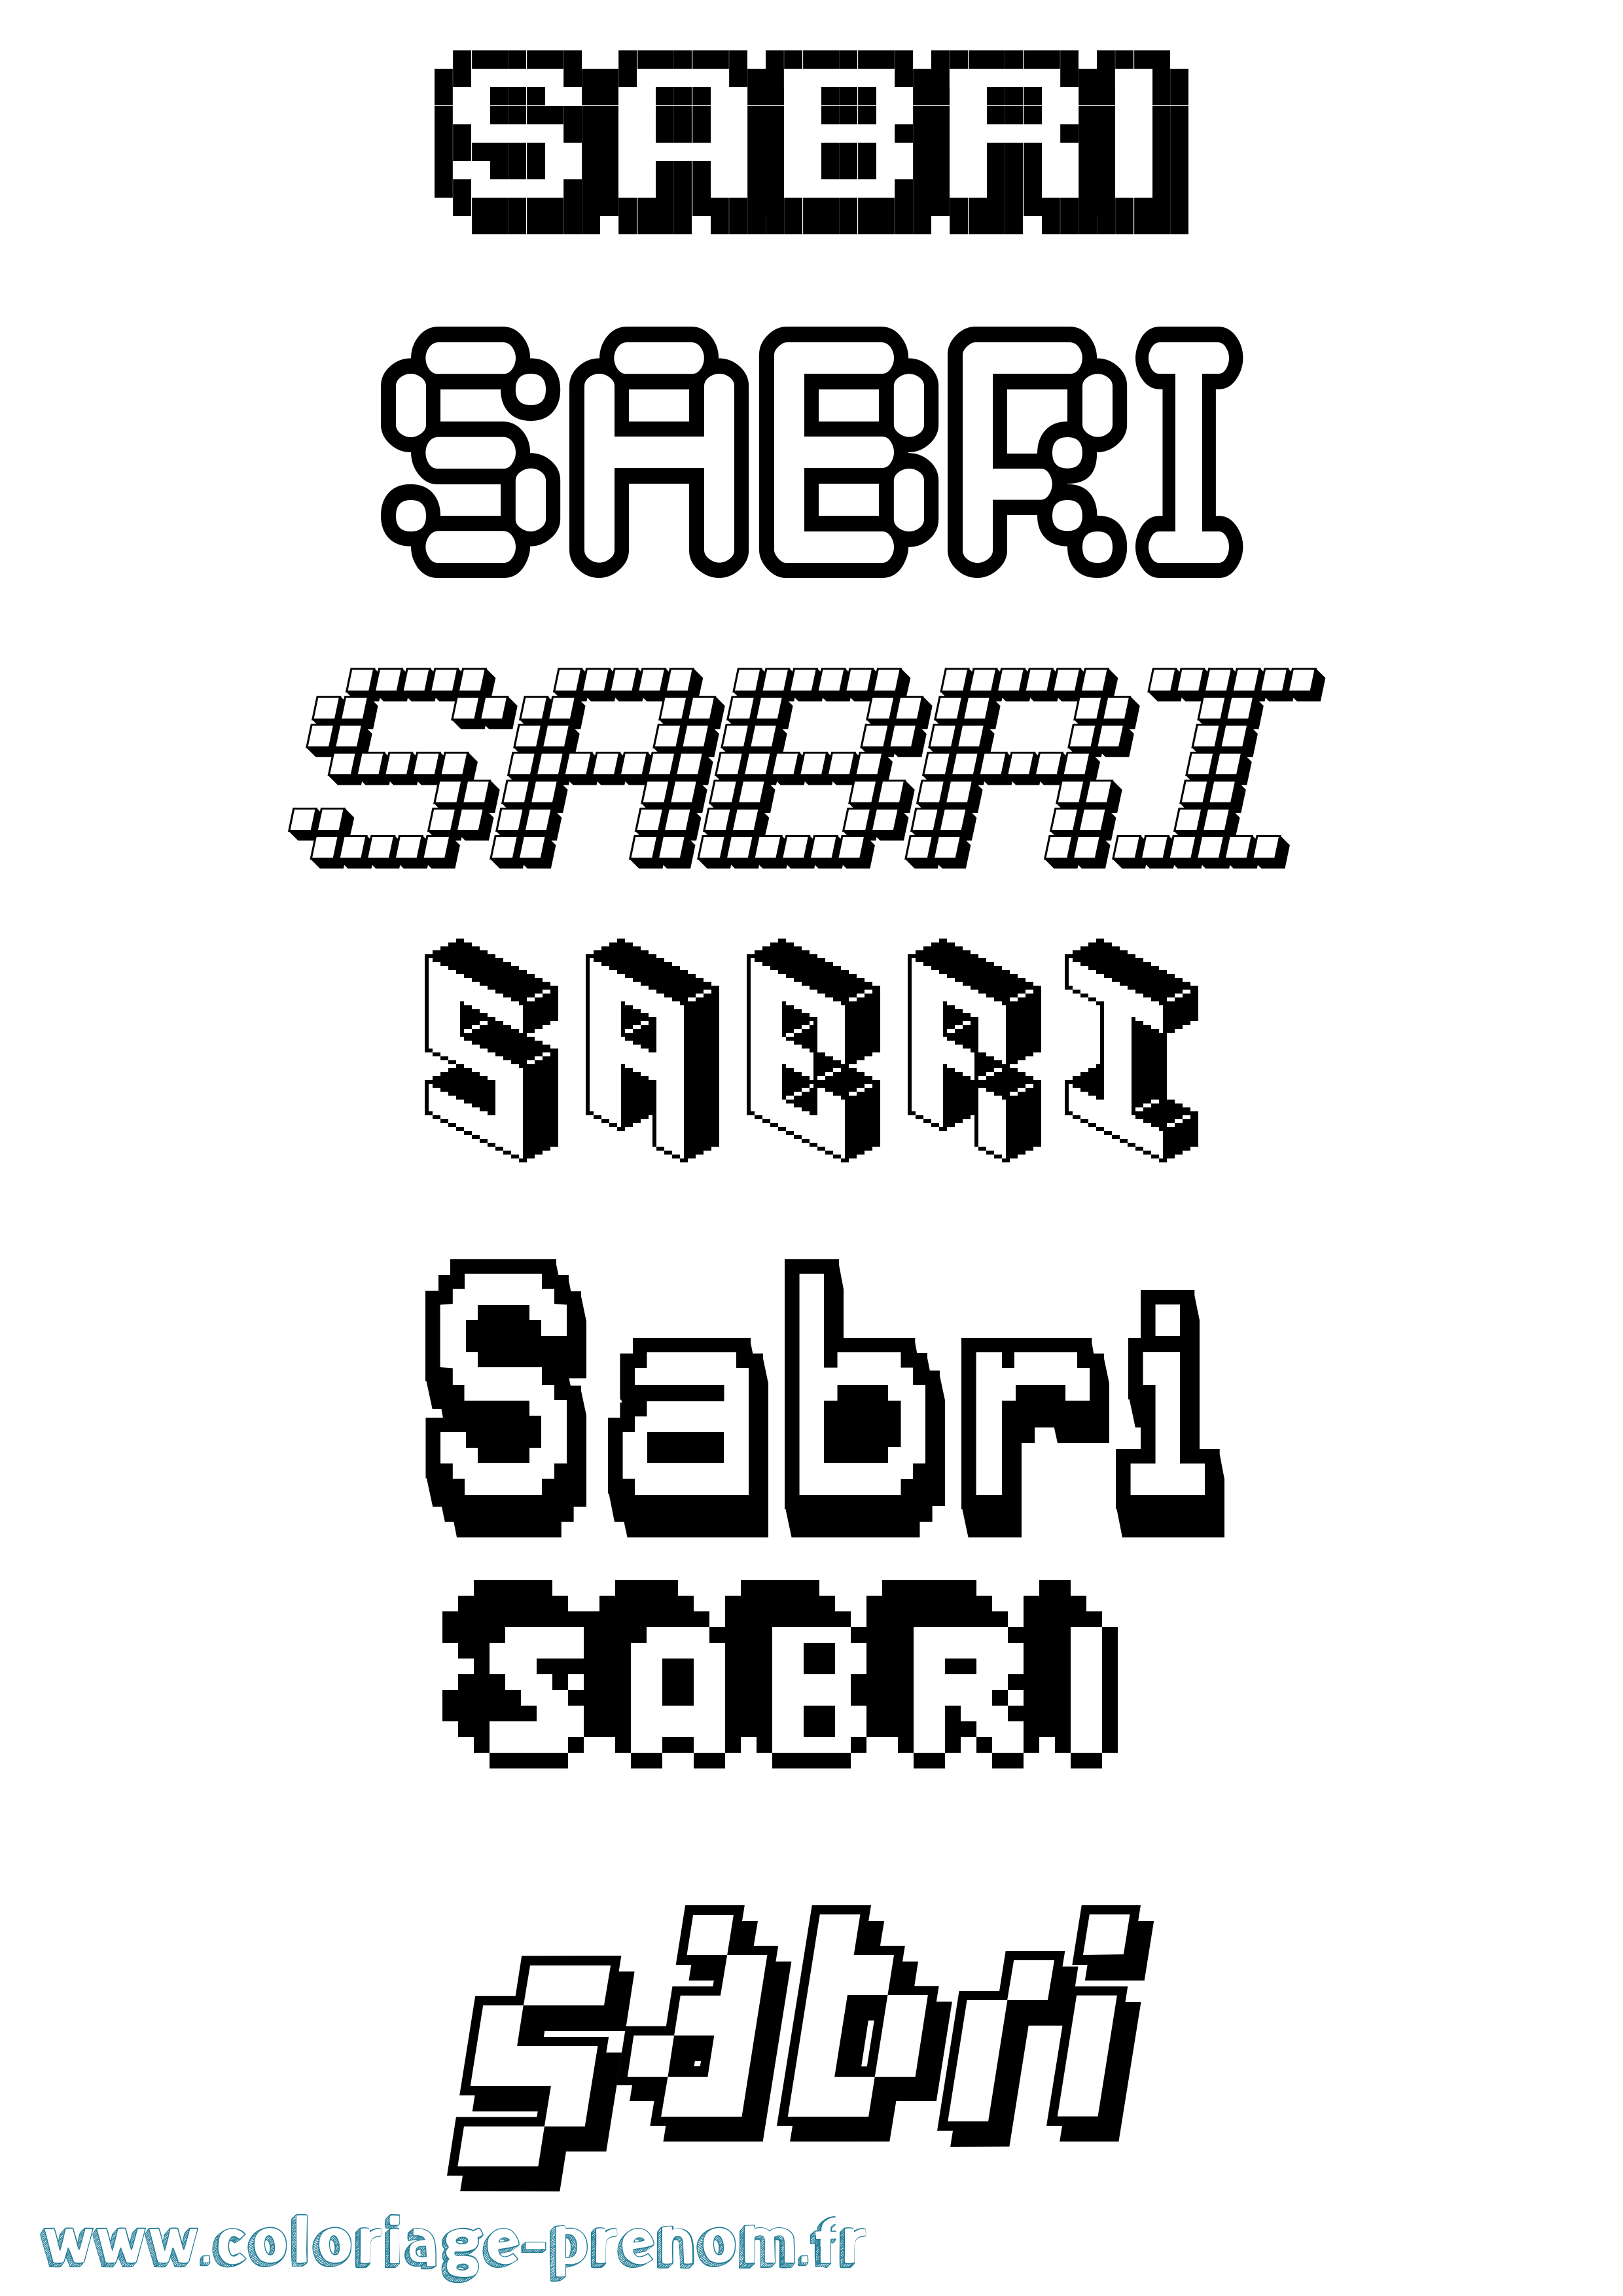 Coloriage prénom Sabri Pixel